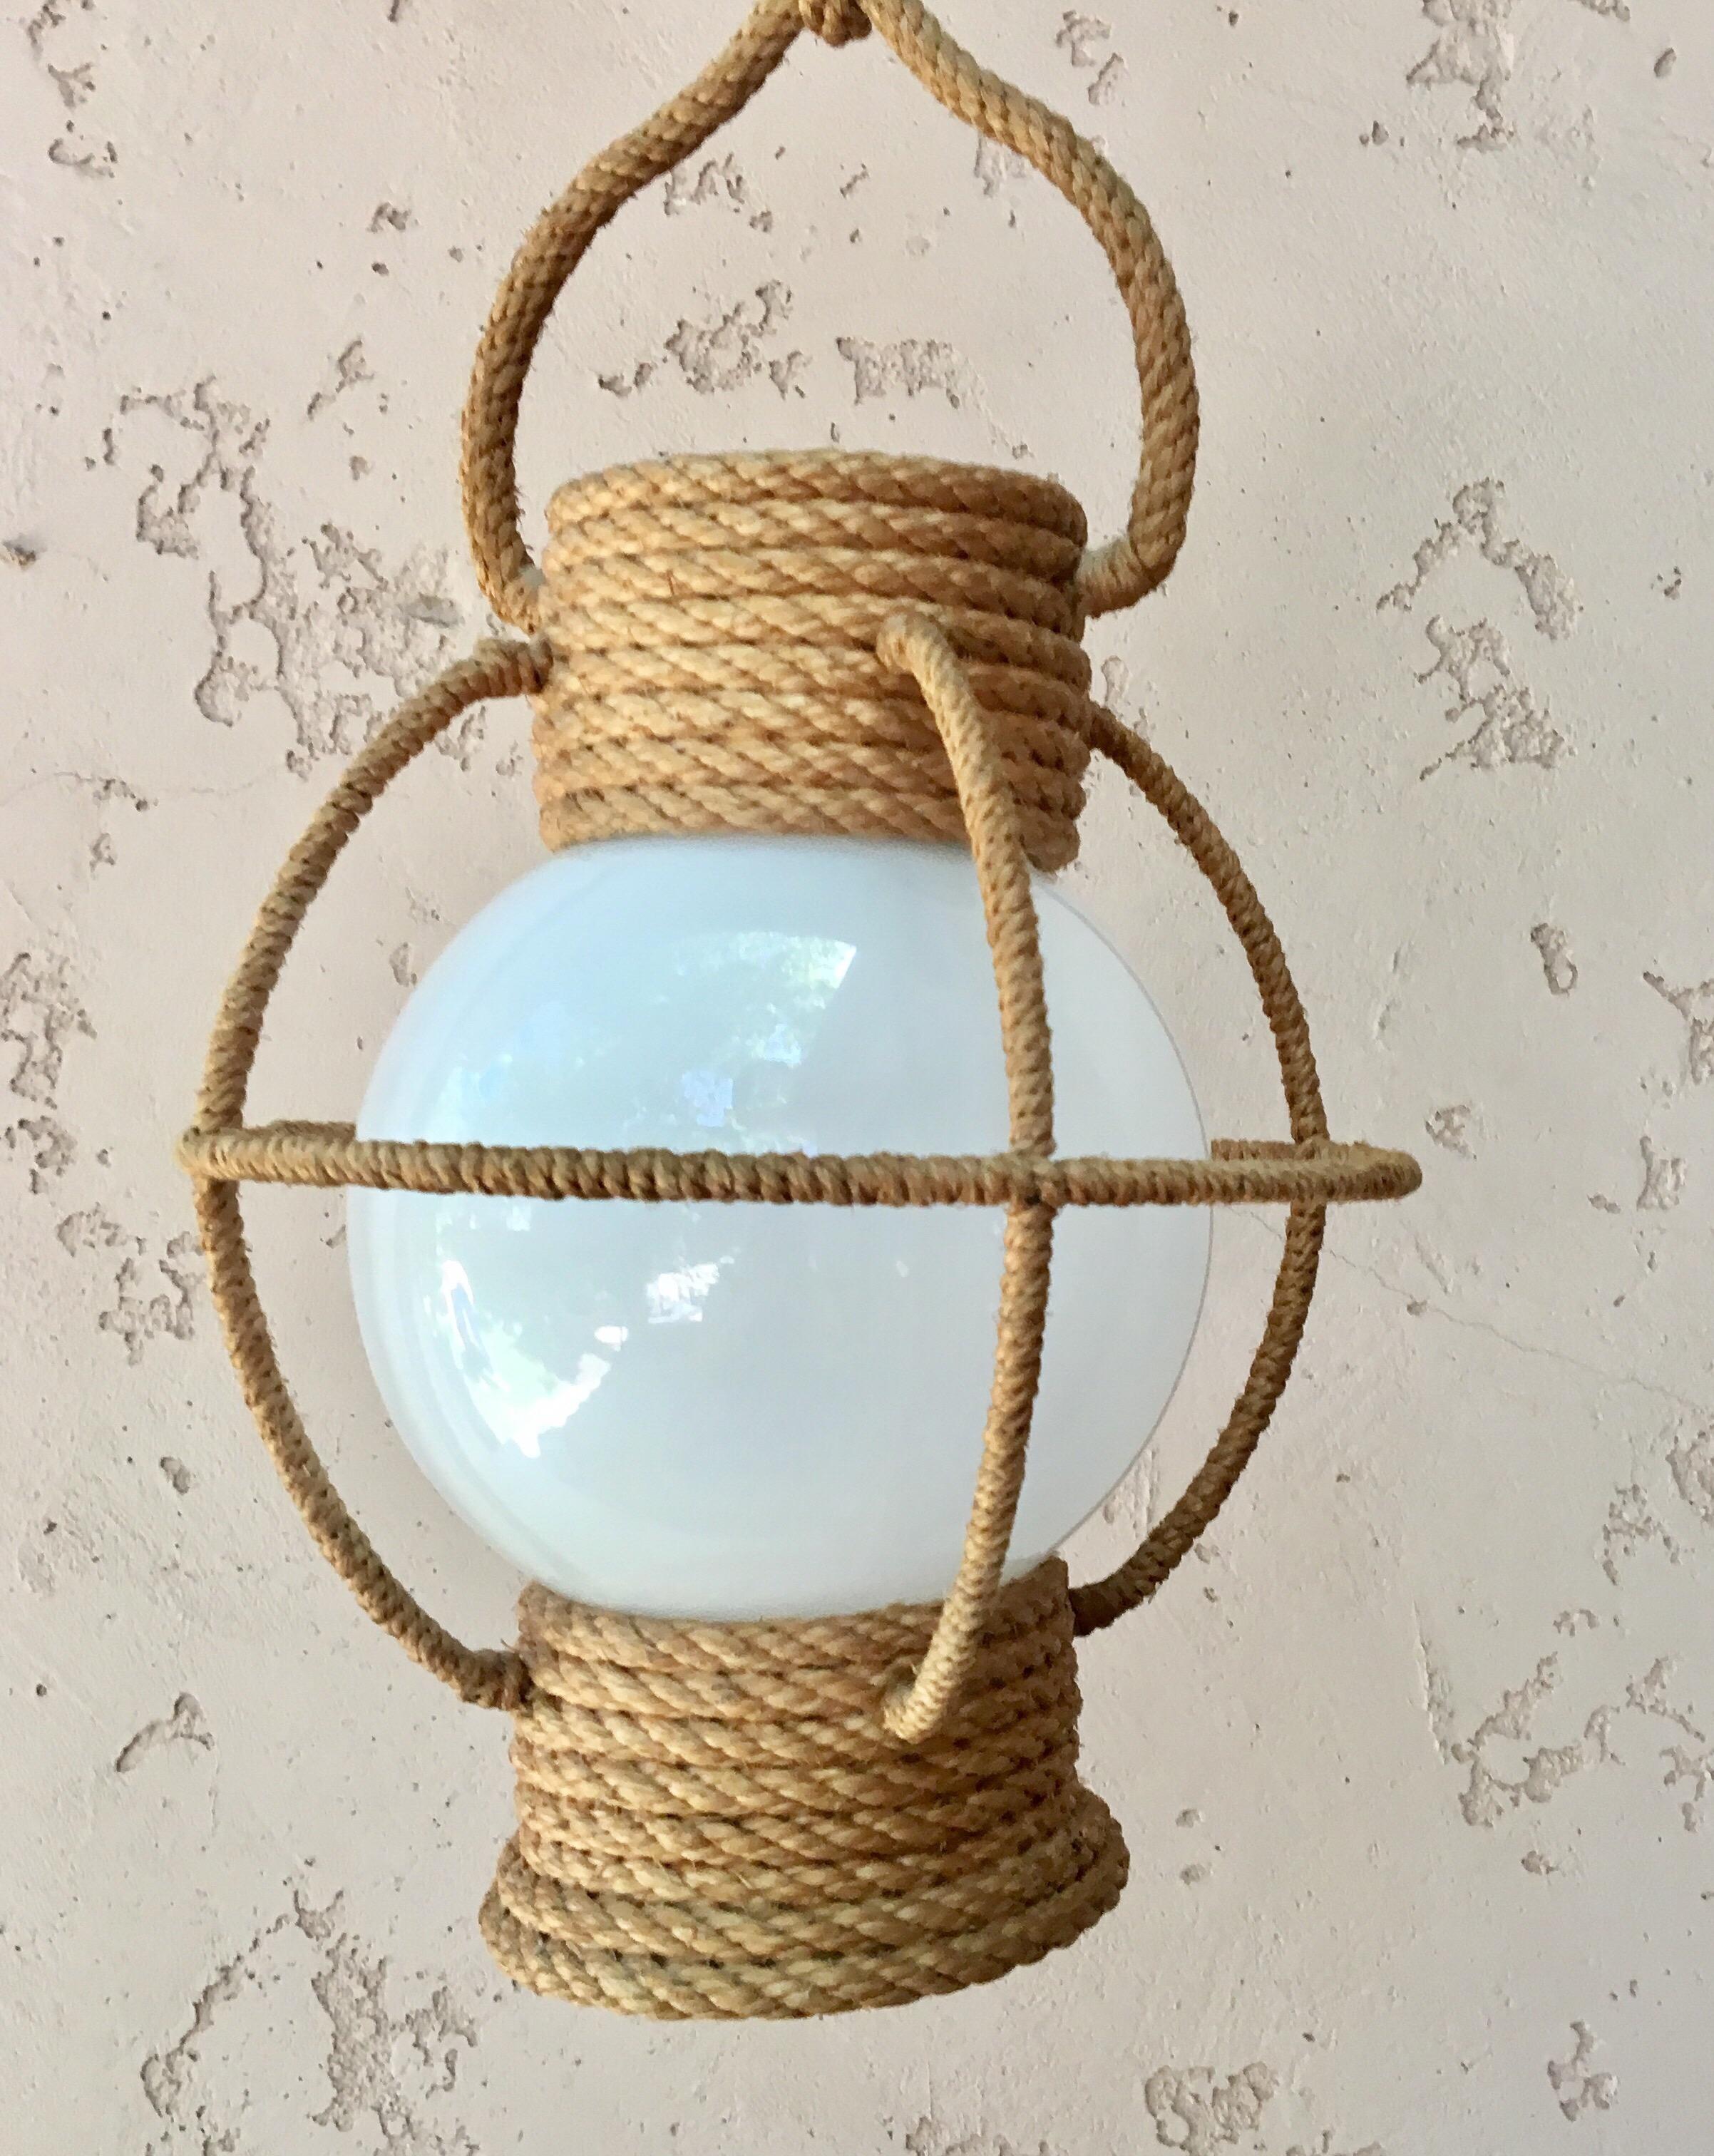 Lustre lanterne circulaire en corde Audoux Minet, circa 1960 avec verre opalin blanc.
Mesures : Hauteur / 10.5